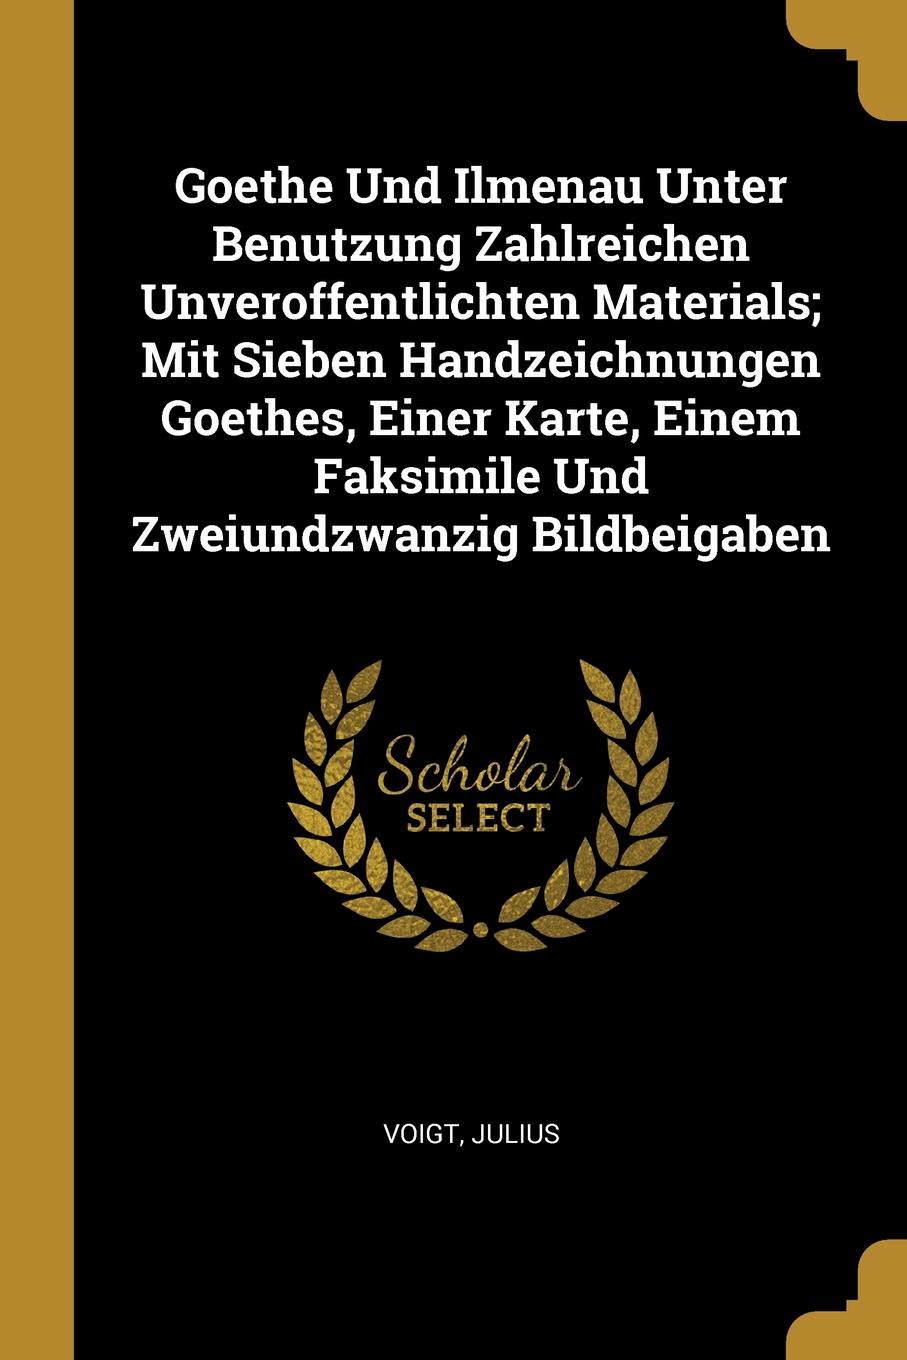 Goethe Und Ilmenau Unter Benutzung Zahlreichen Unveroffentlichten Materials; Mit Sieben Handzeichnungen Goethes, Einer Karte, Einem Faksimile Und Zweiundzwanzig Bildbeigaben